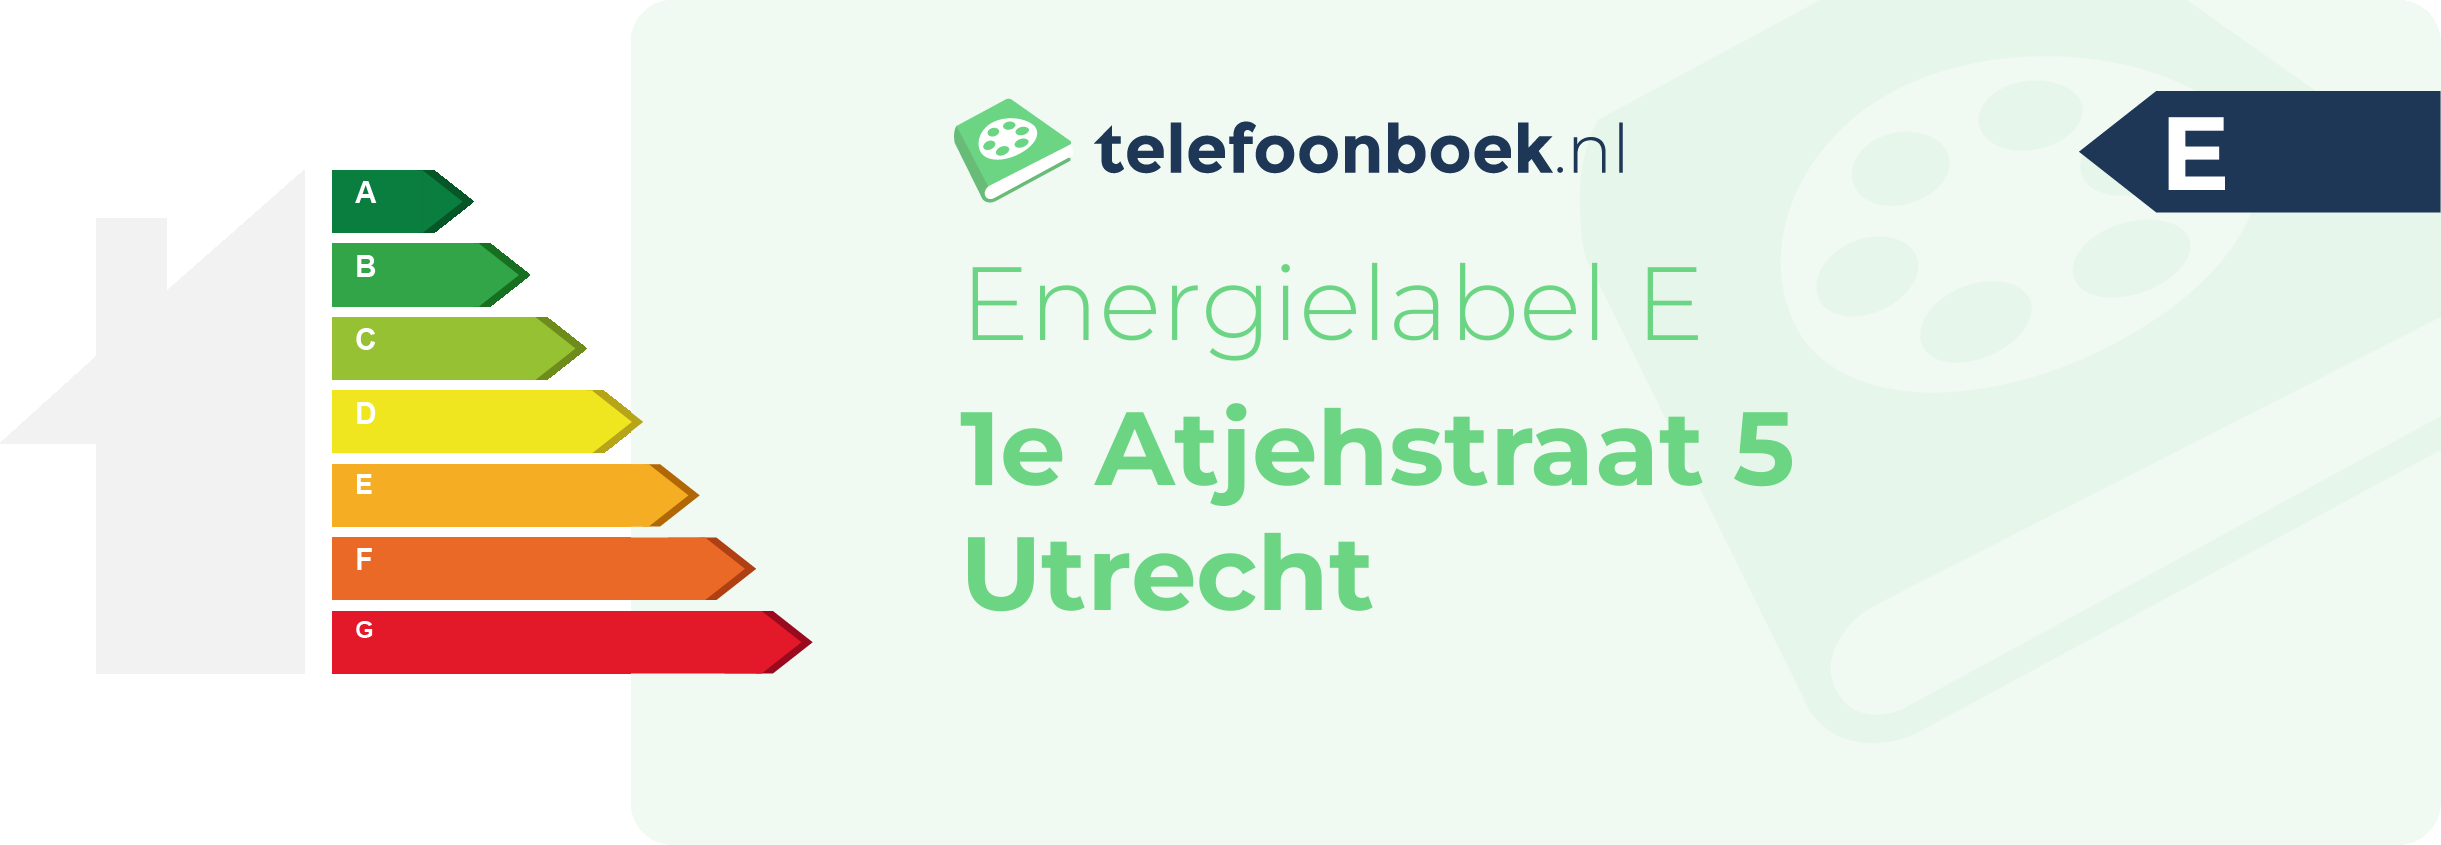 Energielabel 1e Atjehstraat 5 Utrecht